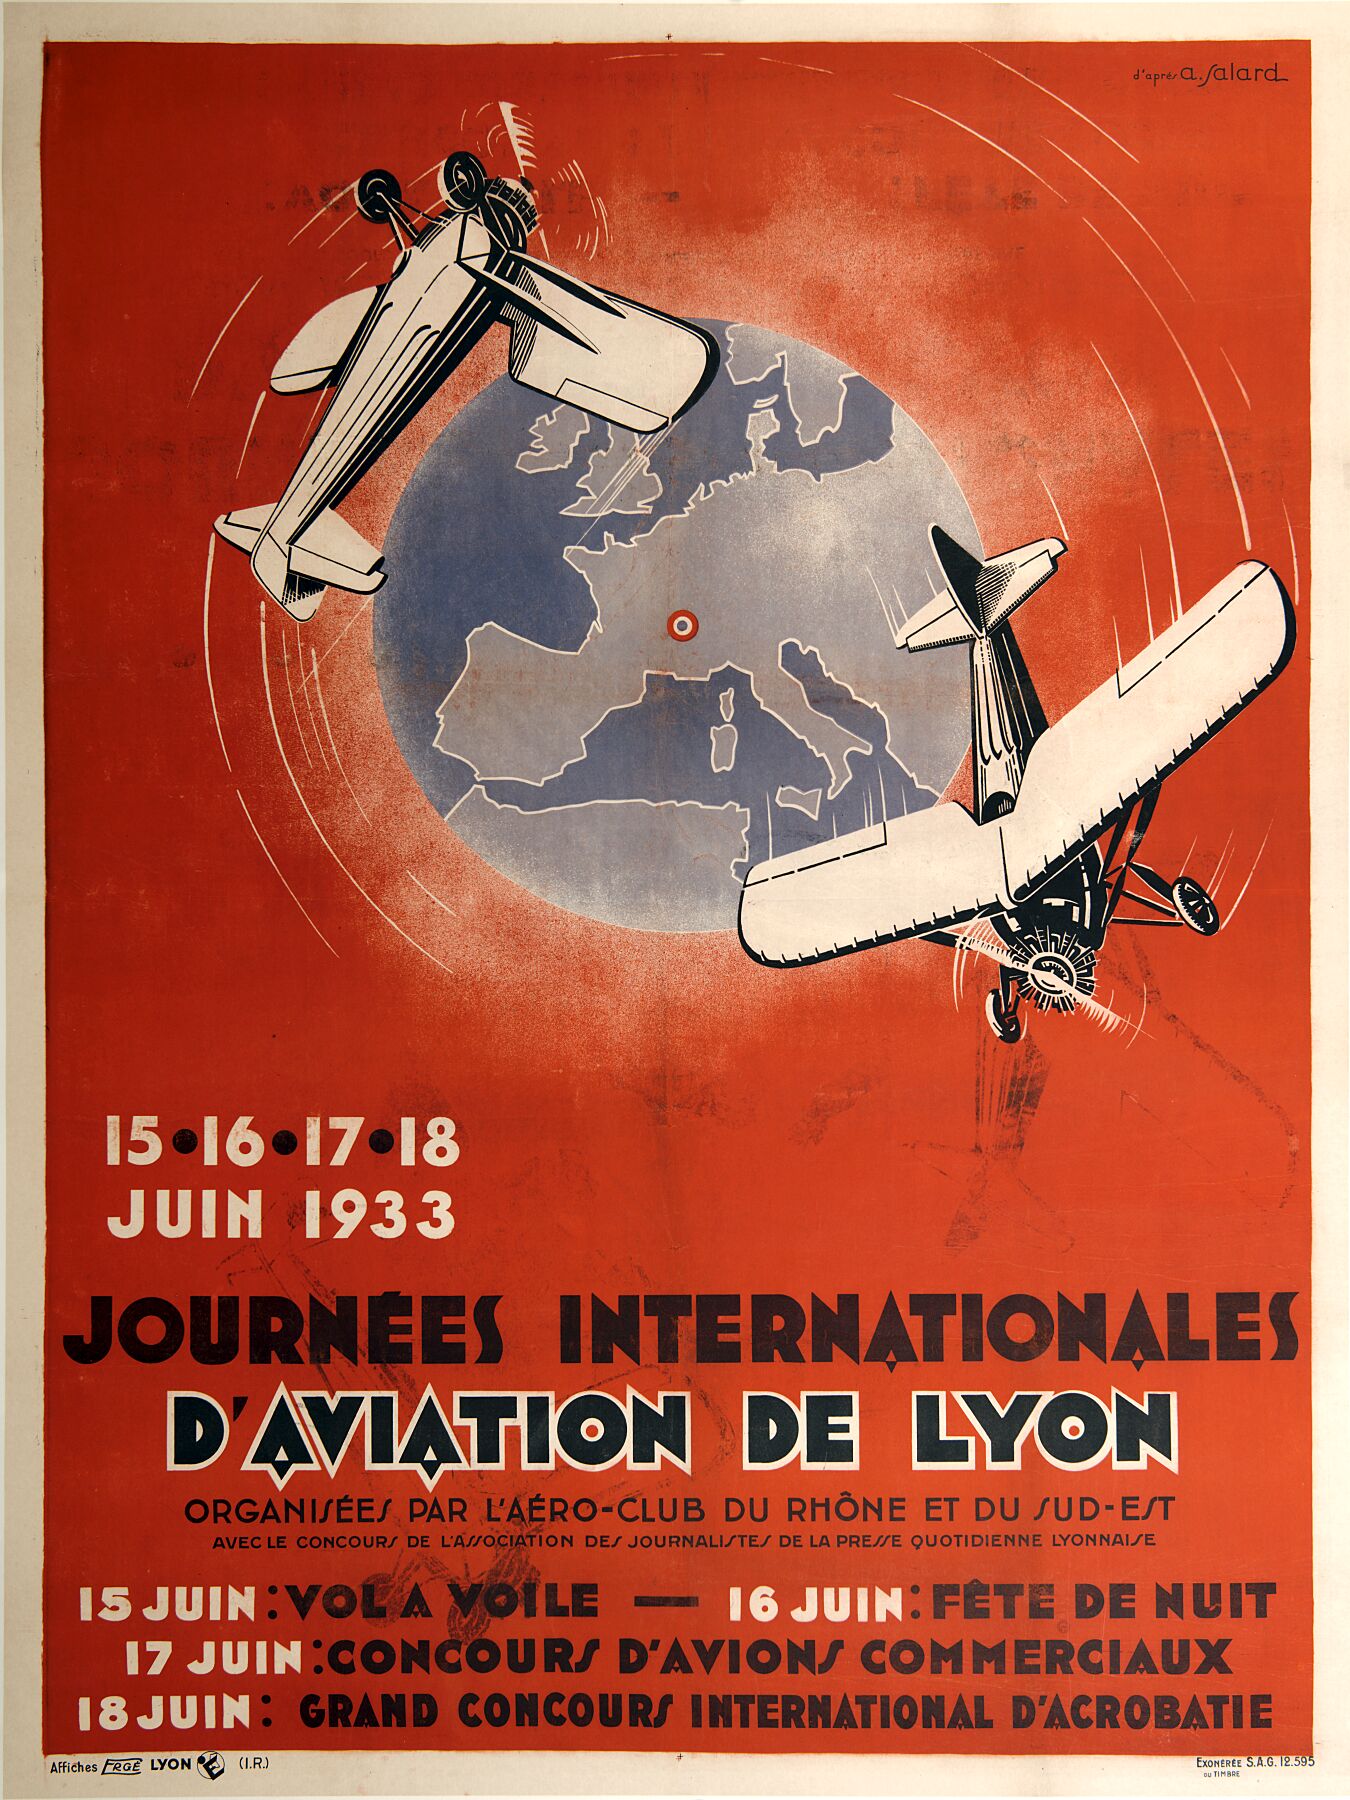 Días Internacionales de la Aviación de Lyon por A. Salard - 1933 